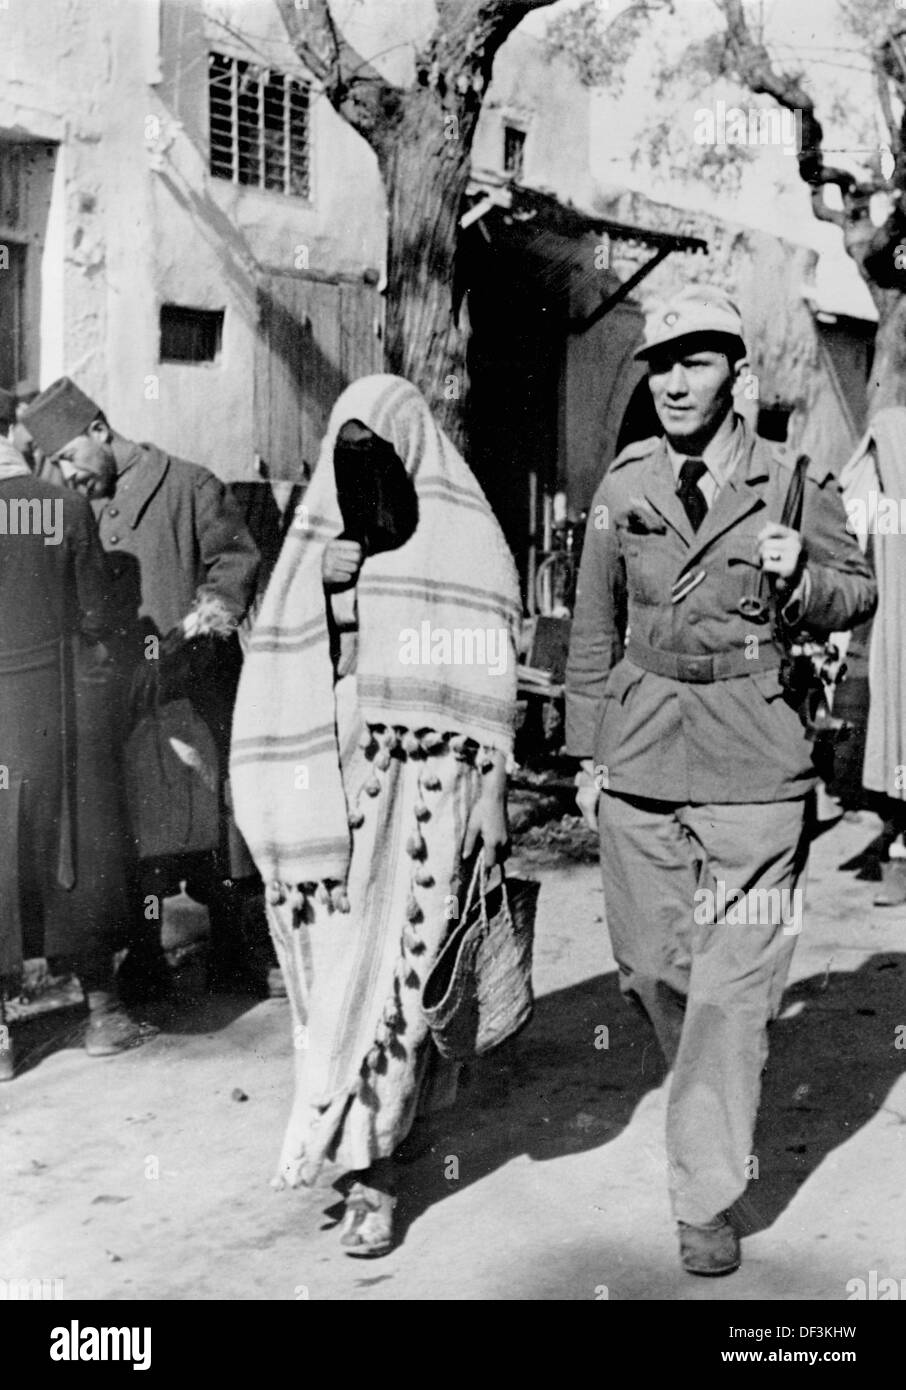 L'immagine dalla propaganda nazista! Raffigura un soldato della Wehrmacht tedesca con una donna locale in un nord africana di quartiere della medina, pubblicato il 25 marzo 1942. Luogo sconosciuto. Foto: Berliner Verlag/Archiv Foto Stock